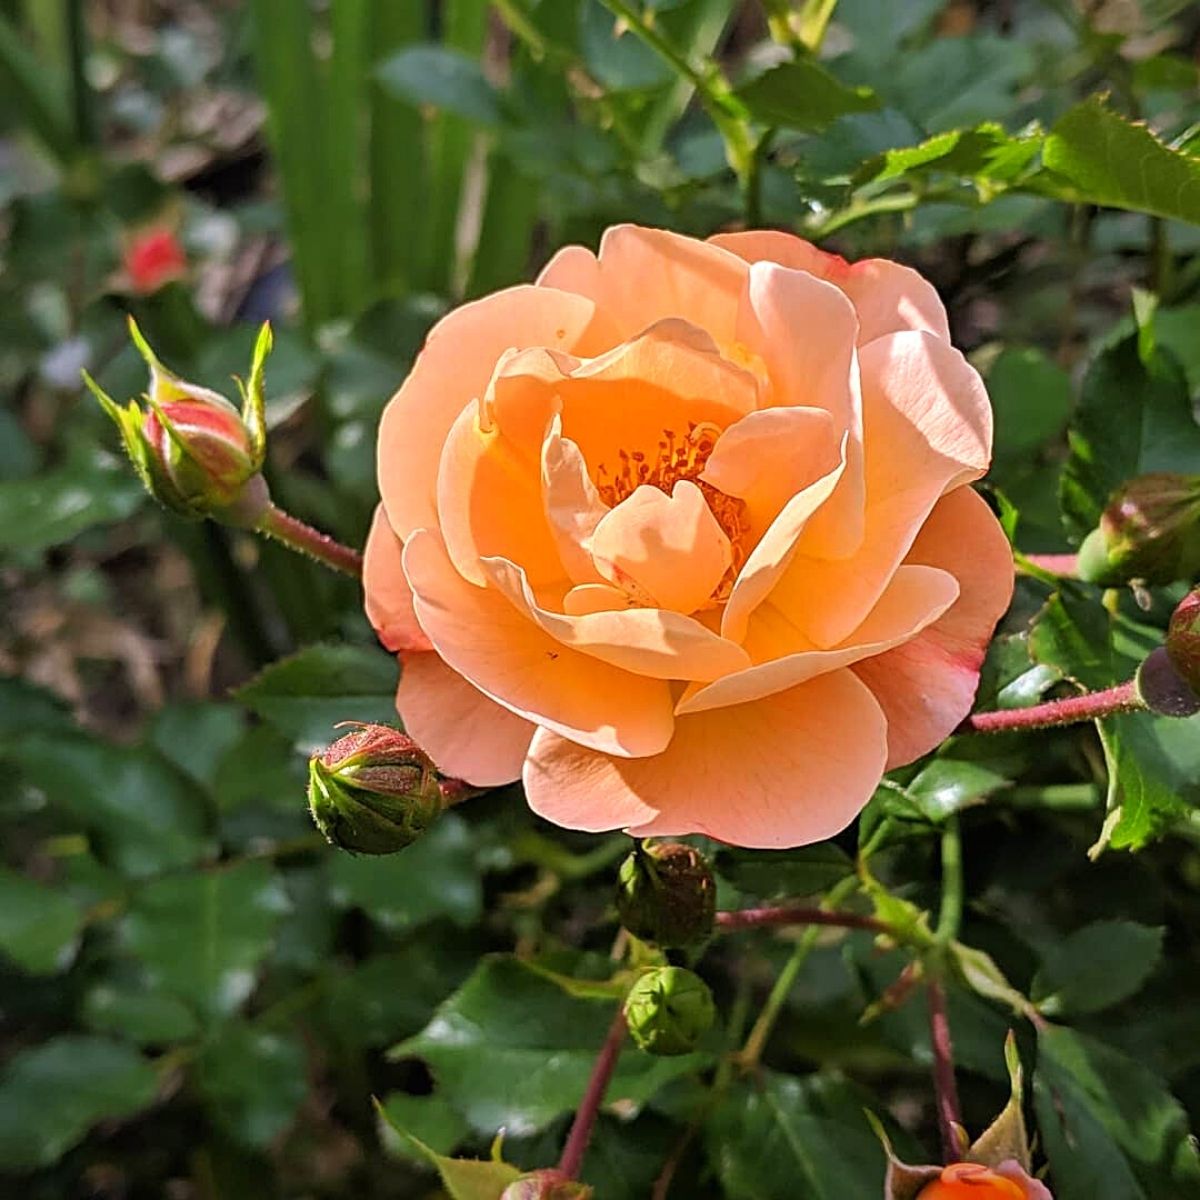 a flower carpet rose amber bloom